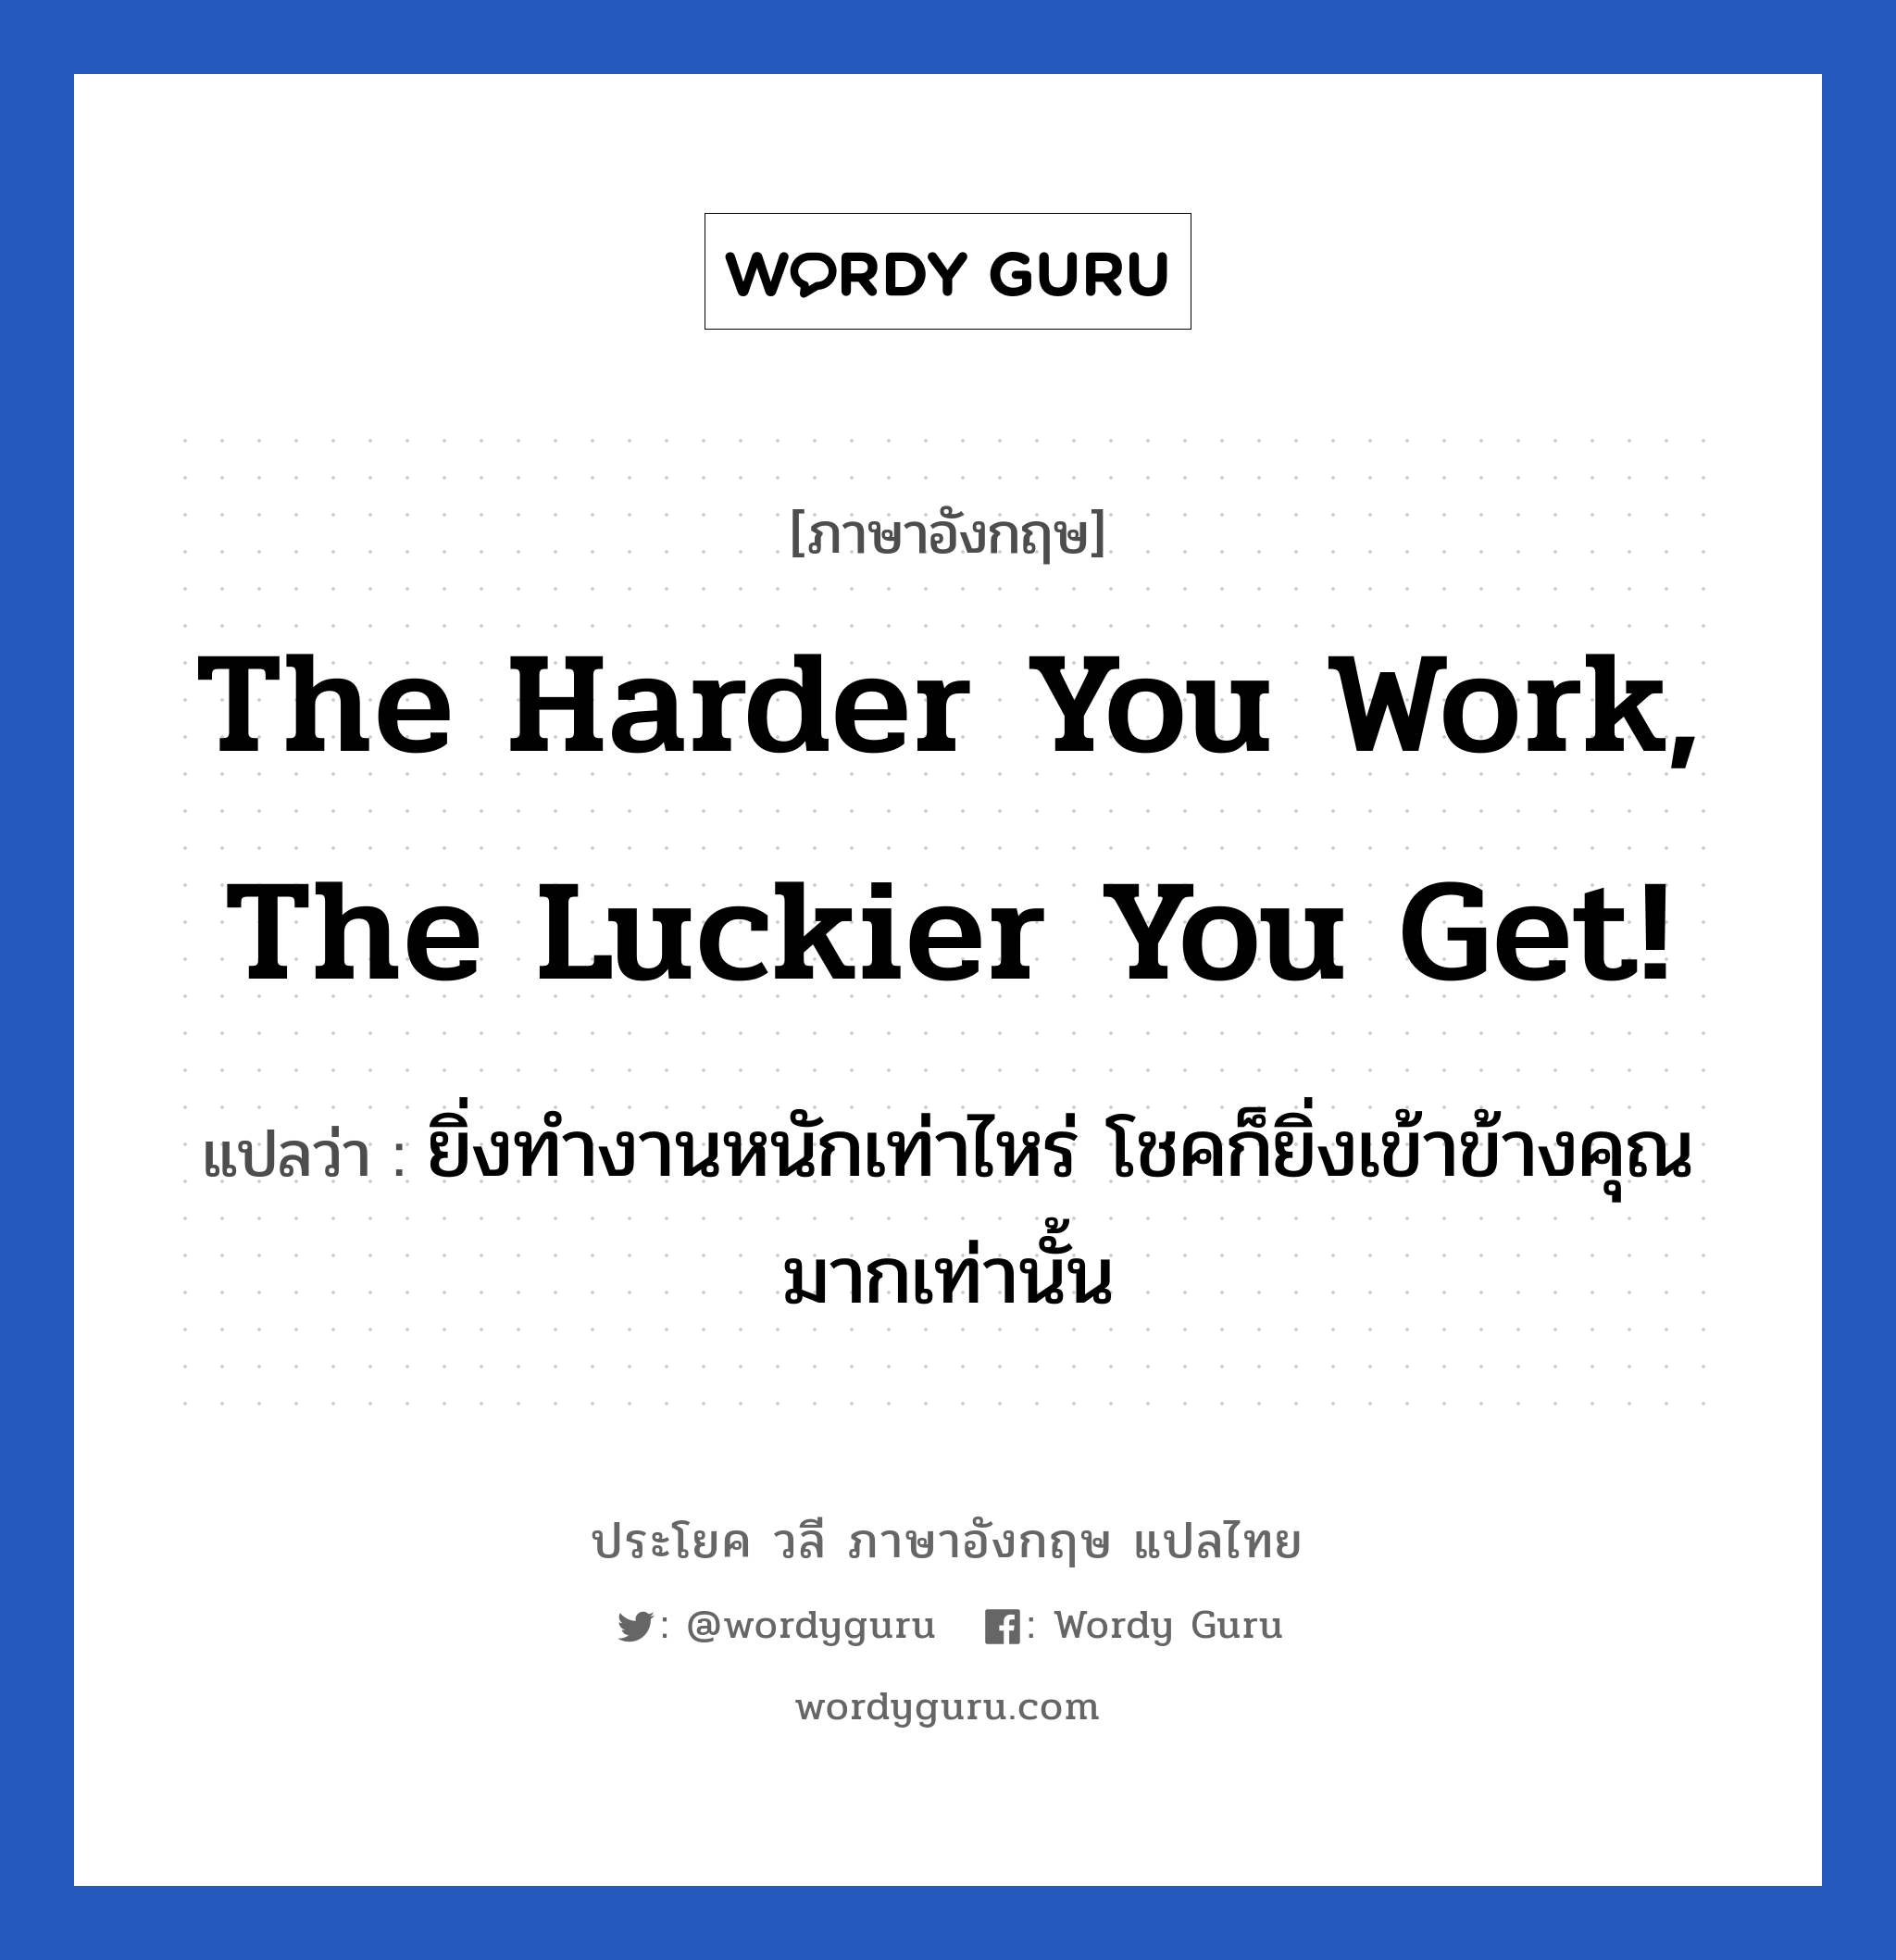 ยิ่งทำงานหนักเท่าไหร่ โชคก็ยิ่งเข้าข้างคุณมากเท่านั้น ภาษาอังกฤษ?, วลีภาษาอังกฤษ ยิ่งทำงานหนักเท่าไหร่ โชคก็ยิ่งเข้าข้างคุณมากเท่านั้น แปลว่า The harder you work, the luckier you get! หมวด ในที่ทำงาน